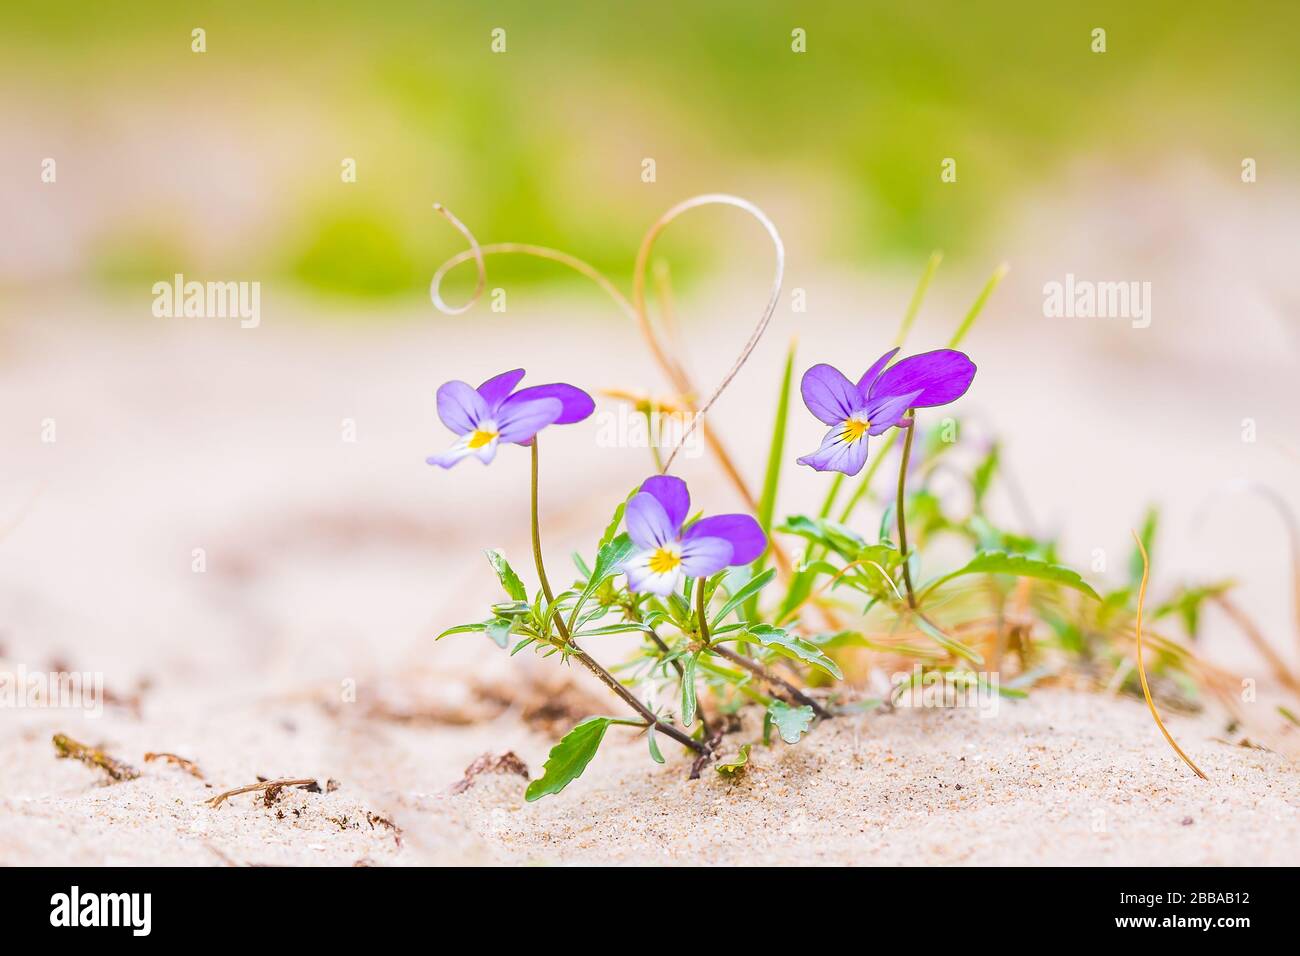 Viola tricolore curtisii raro fiore selvatico, fiorendo nella sabbia nelle dune. Paesaggio costiero luce solare brillante Foto Stock